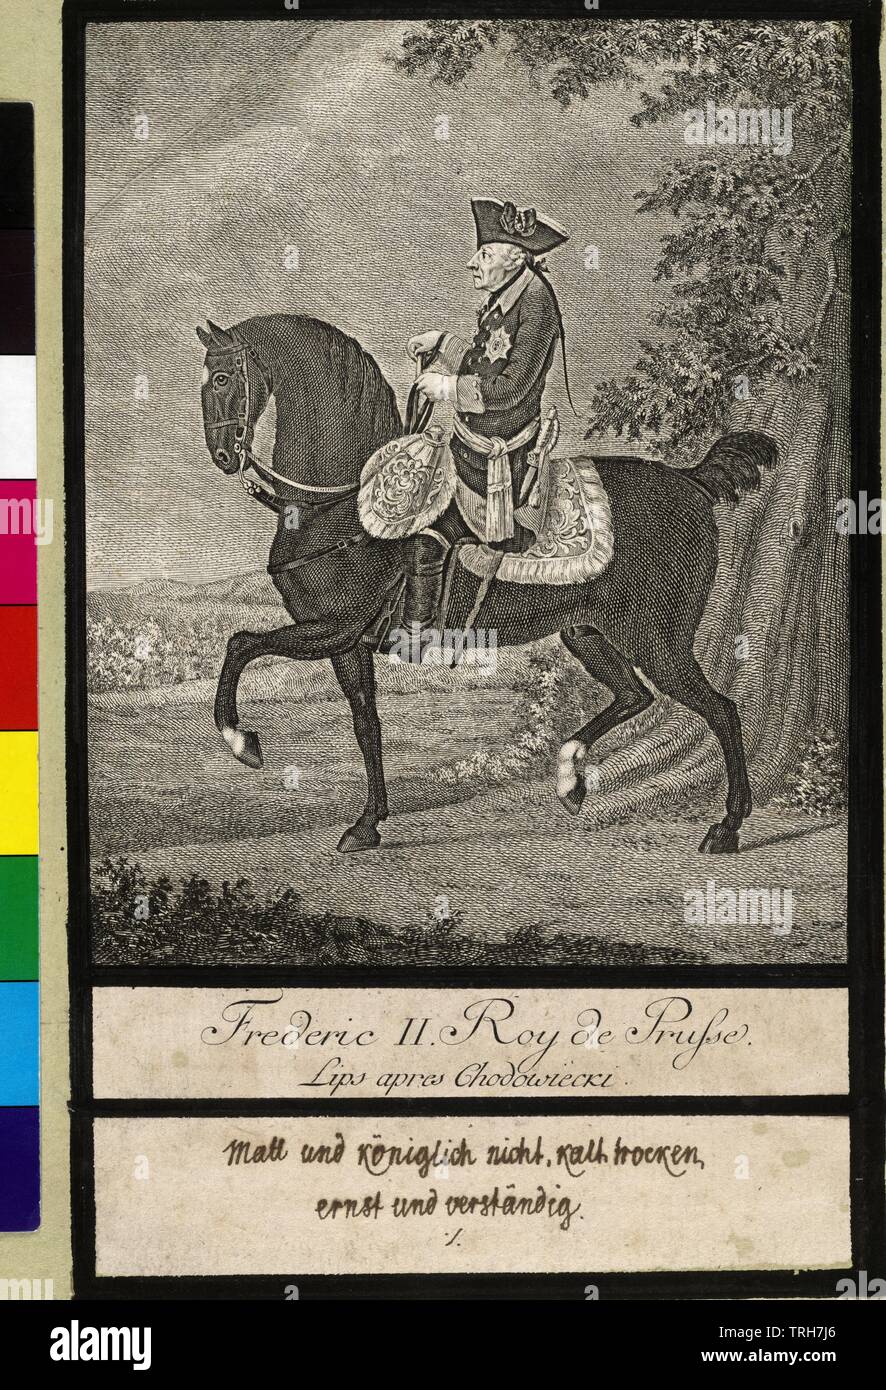 Friedrich II. von Preußen, Bild auf Pferd, plattiert auf Karton. Johann Heinrich Lips auf der Basis von Daniel Chodowiecki, Additional-Rights - Clearance-Info - Not-Available Stockfoto